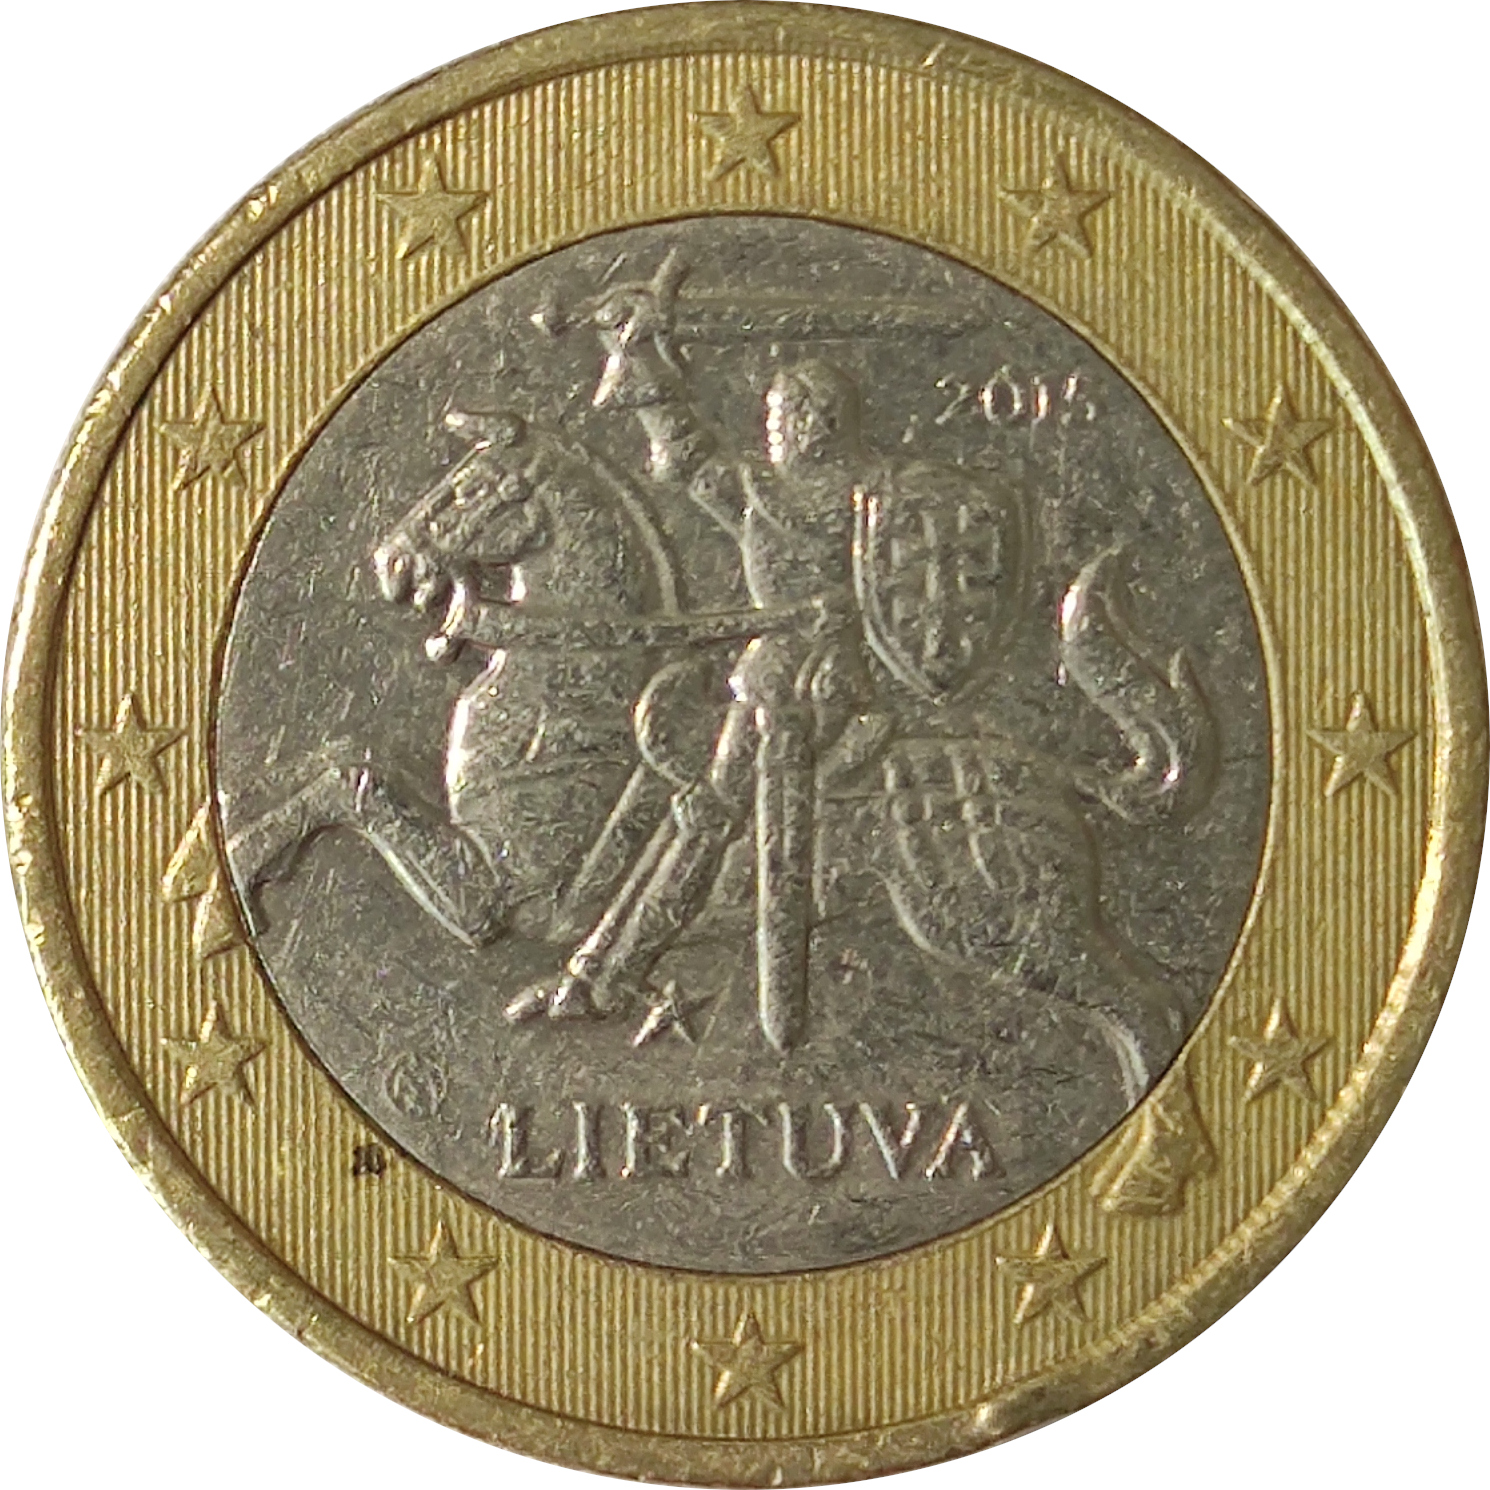 1 euro - Vytis